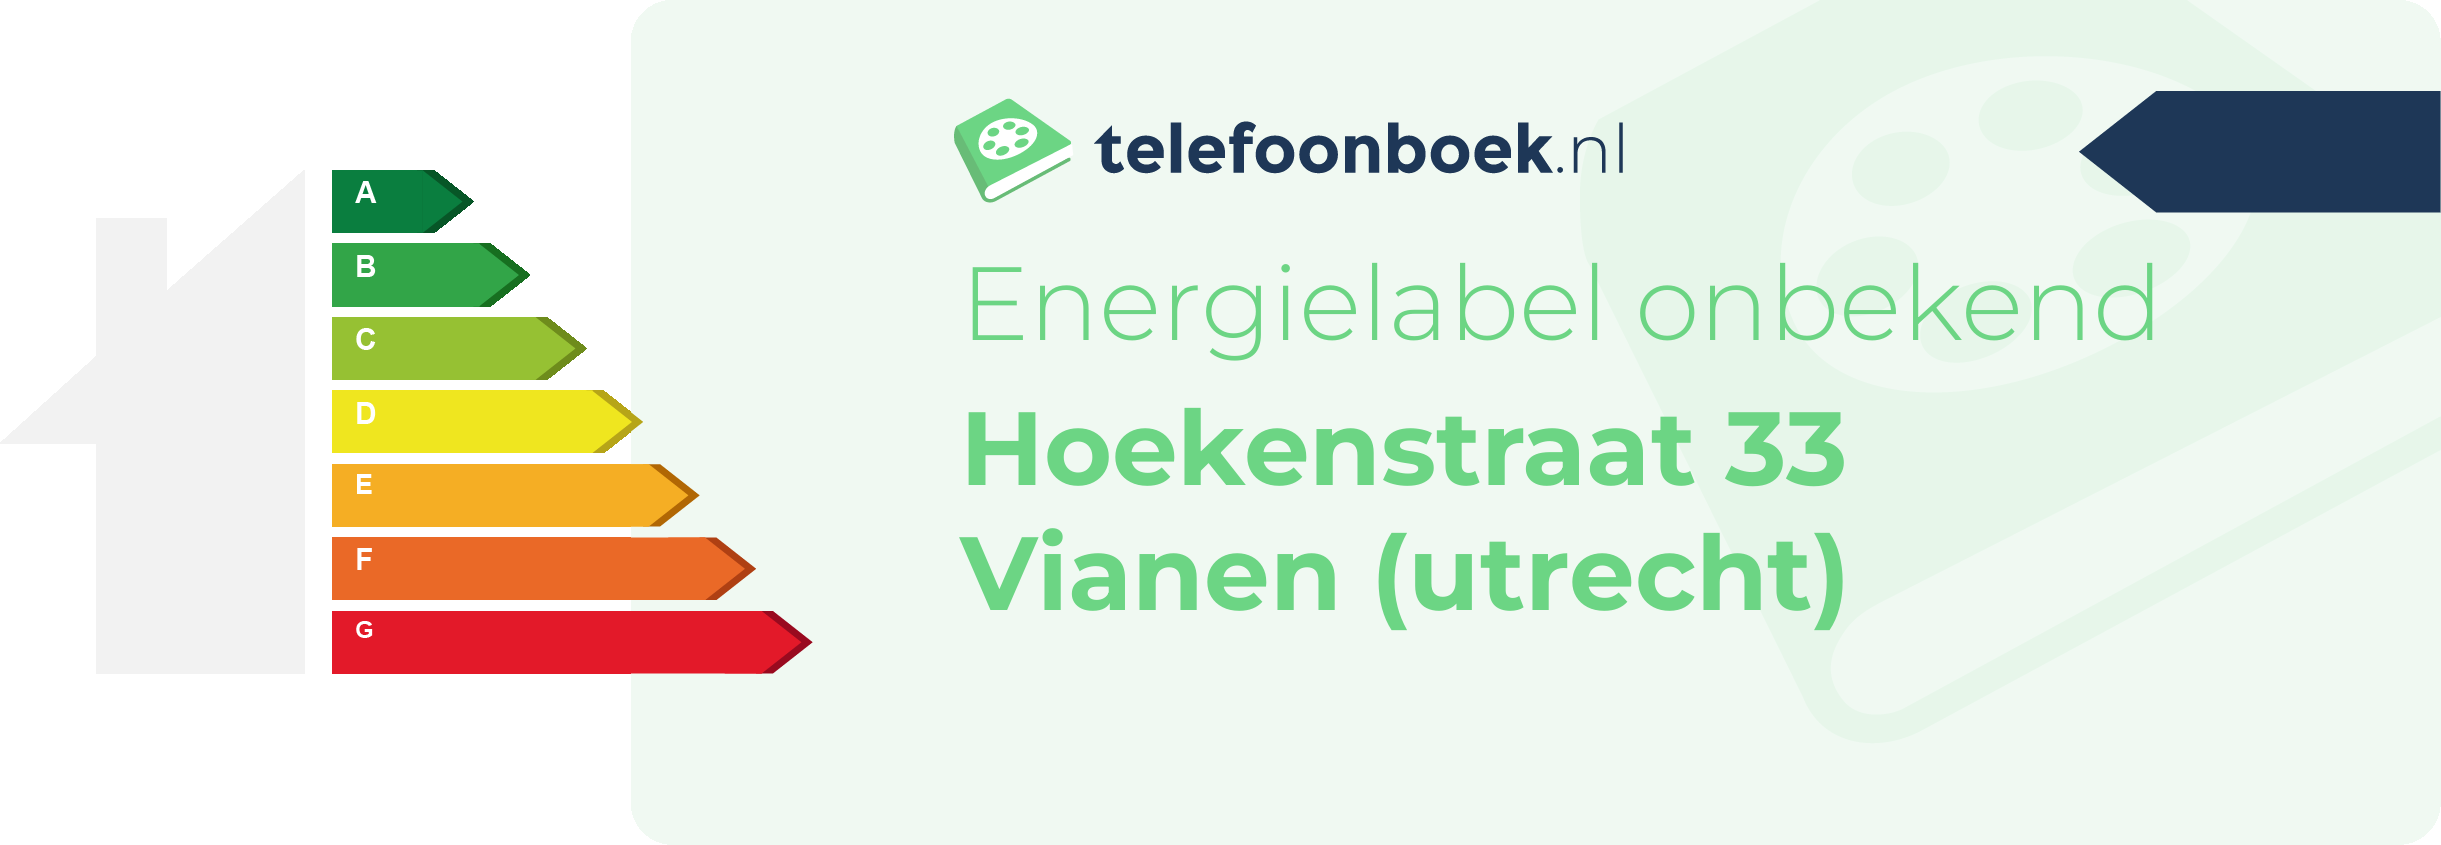 Energielabel Hoekenstraat 33 Vianen (Utrecht)